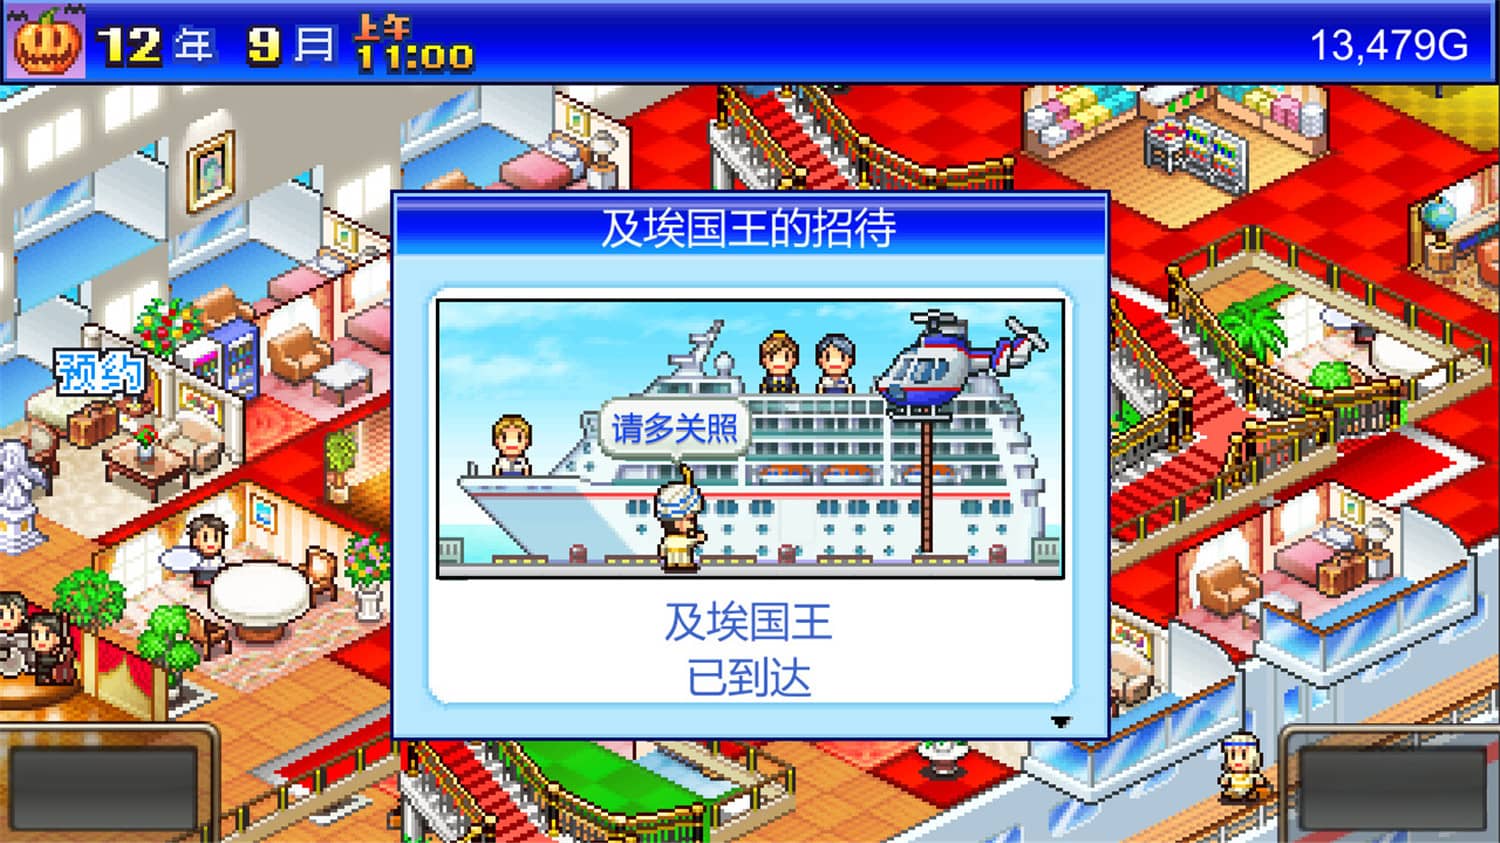 豪华大游轮物语/World Cruise Story插图5